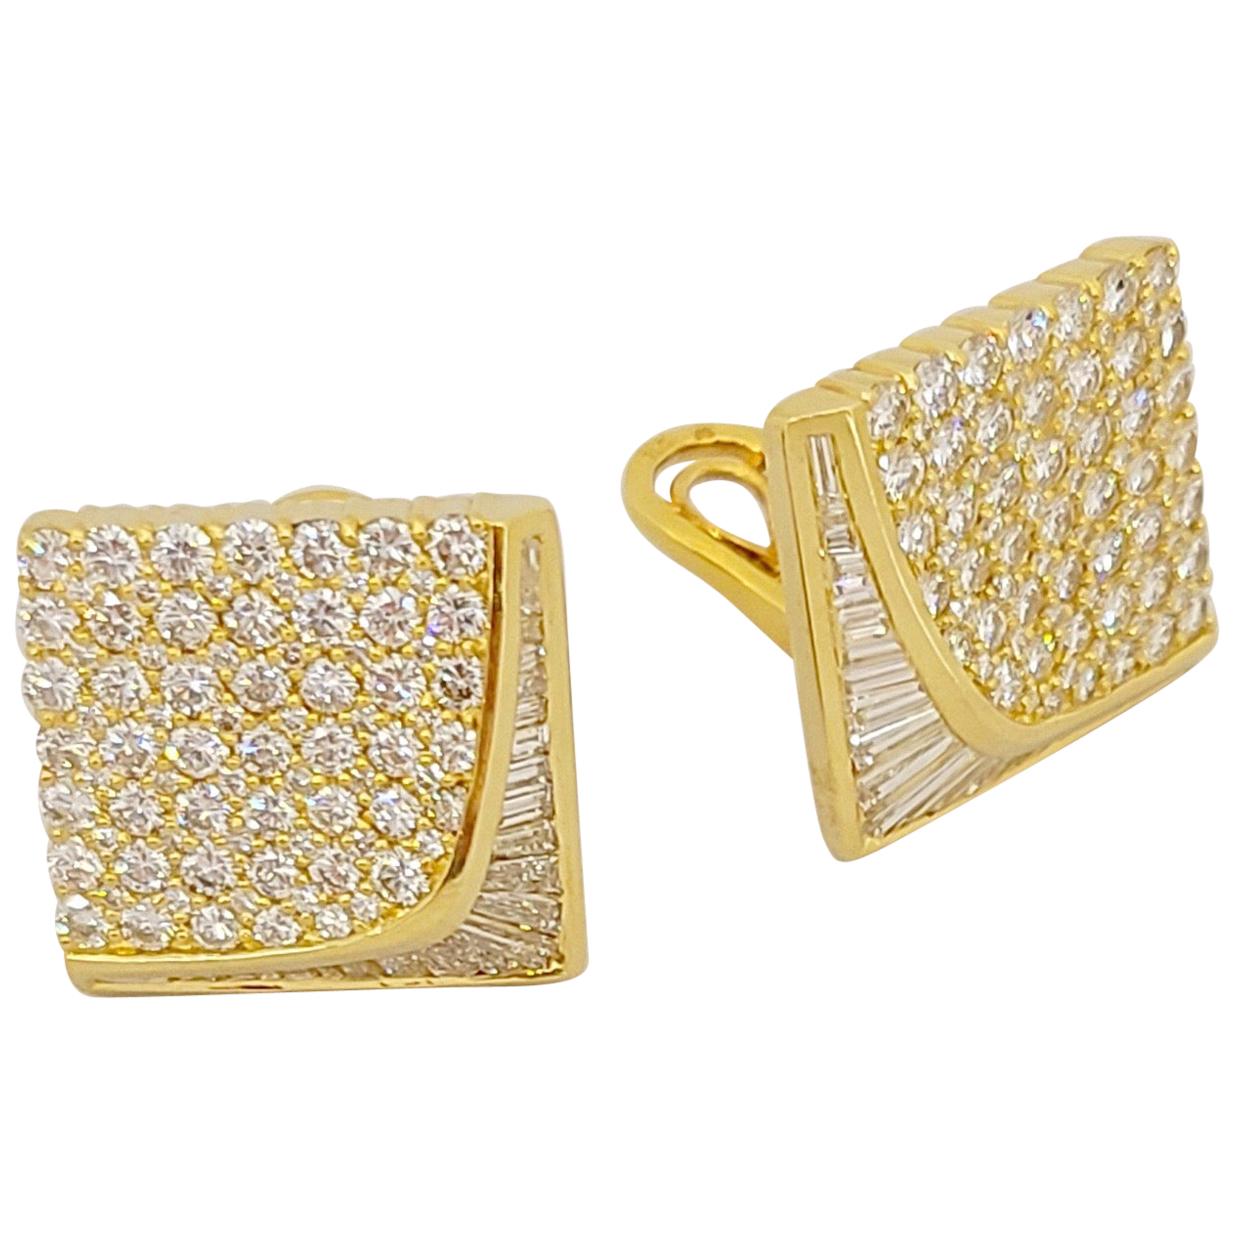 Nova 18 Karat Yellow Gold, 6.88 Carat Diamond Square Shaped Earrings For Sale